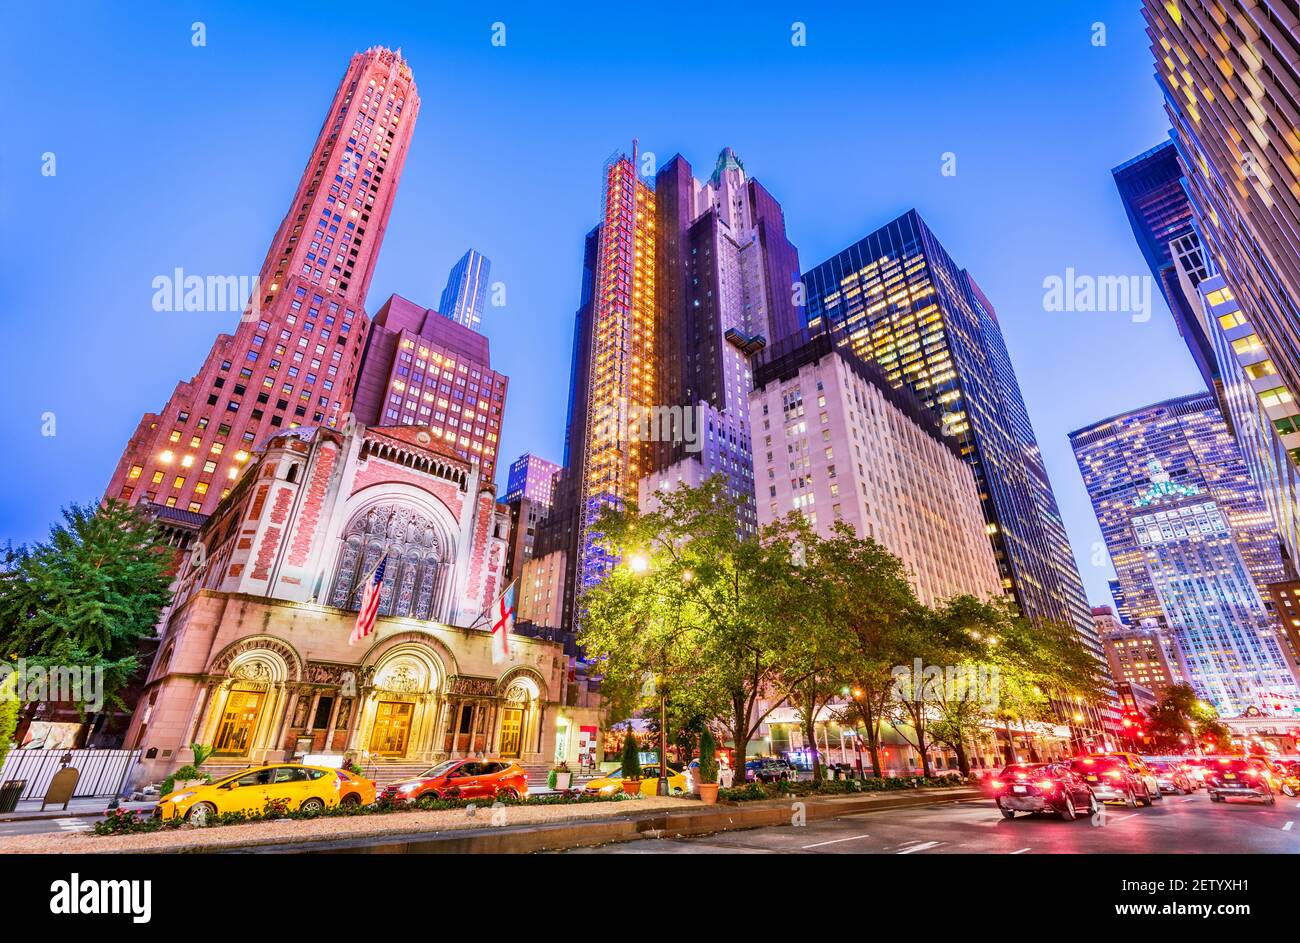 Nueva York, EE.UU. - Septiembre 2019: Famosa 5th Avenue en Manhattan, Nueva York en los Estados Unidos de América Foto de stock